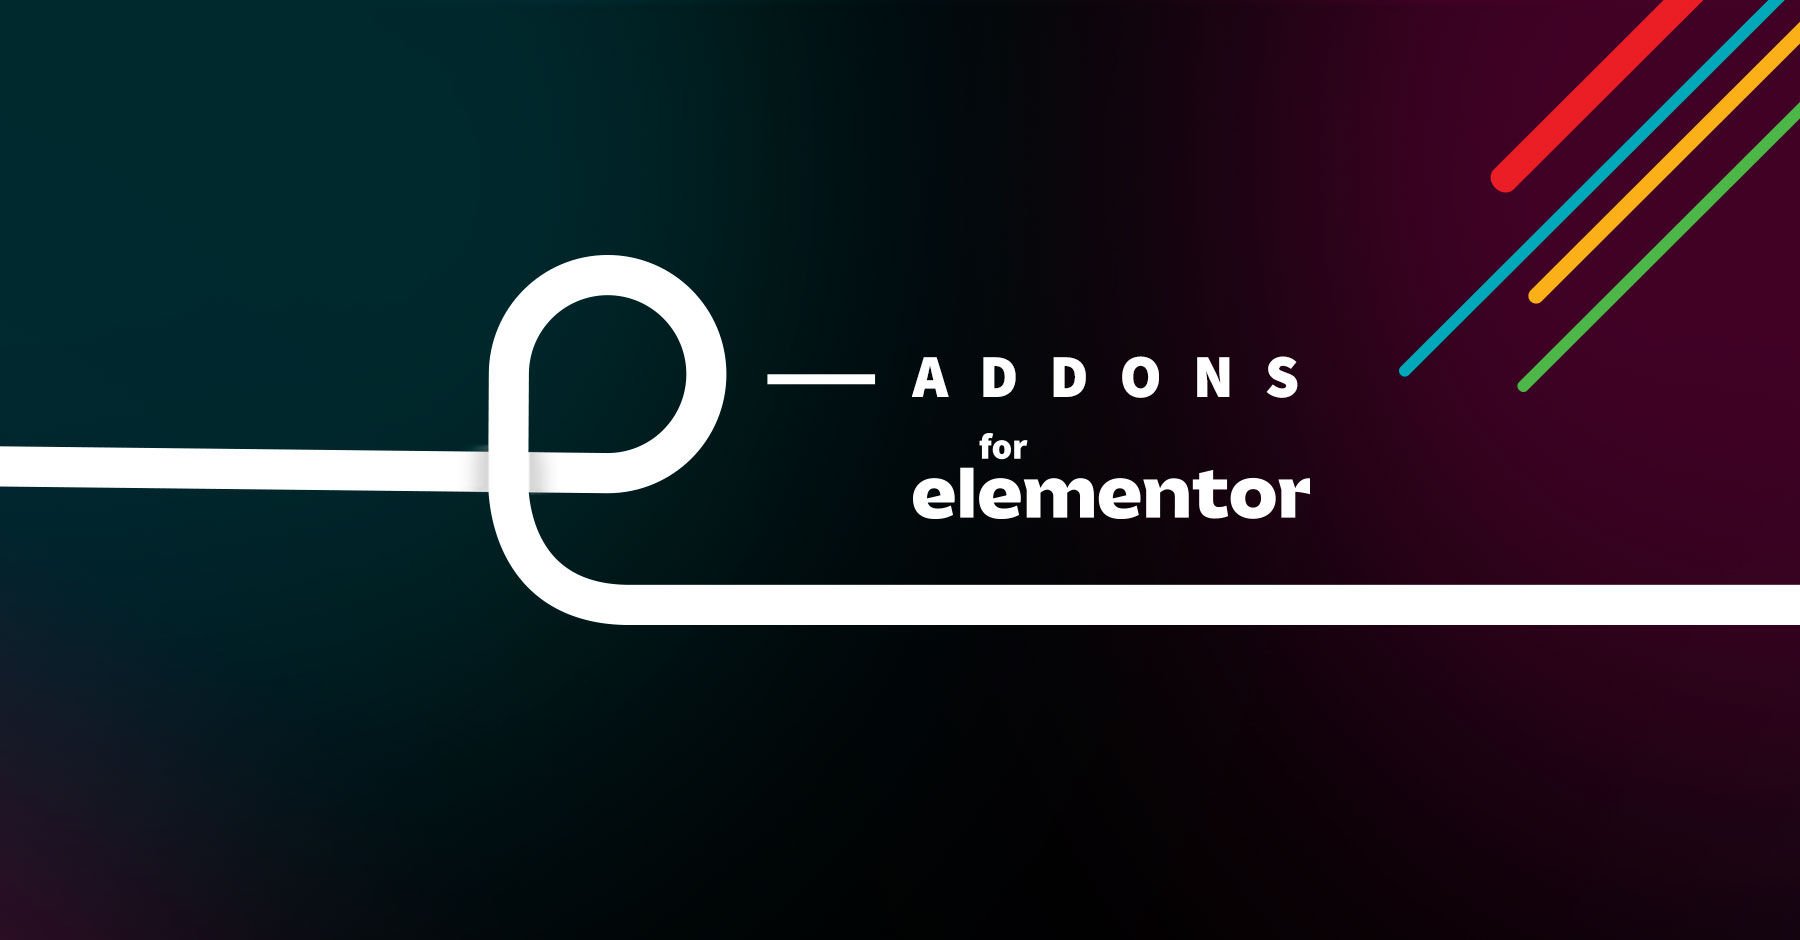 E-Addons - PRO FORM STEPS FOR ELEMENTOR 888.jpg